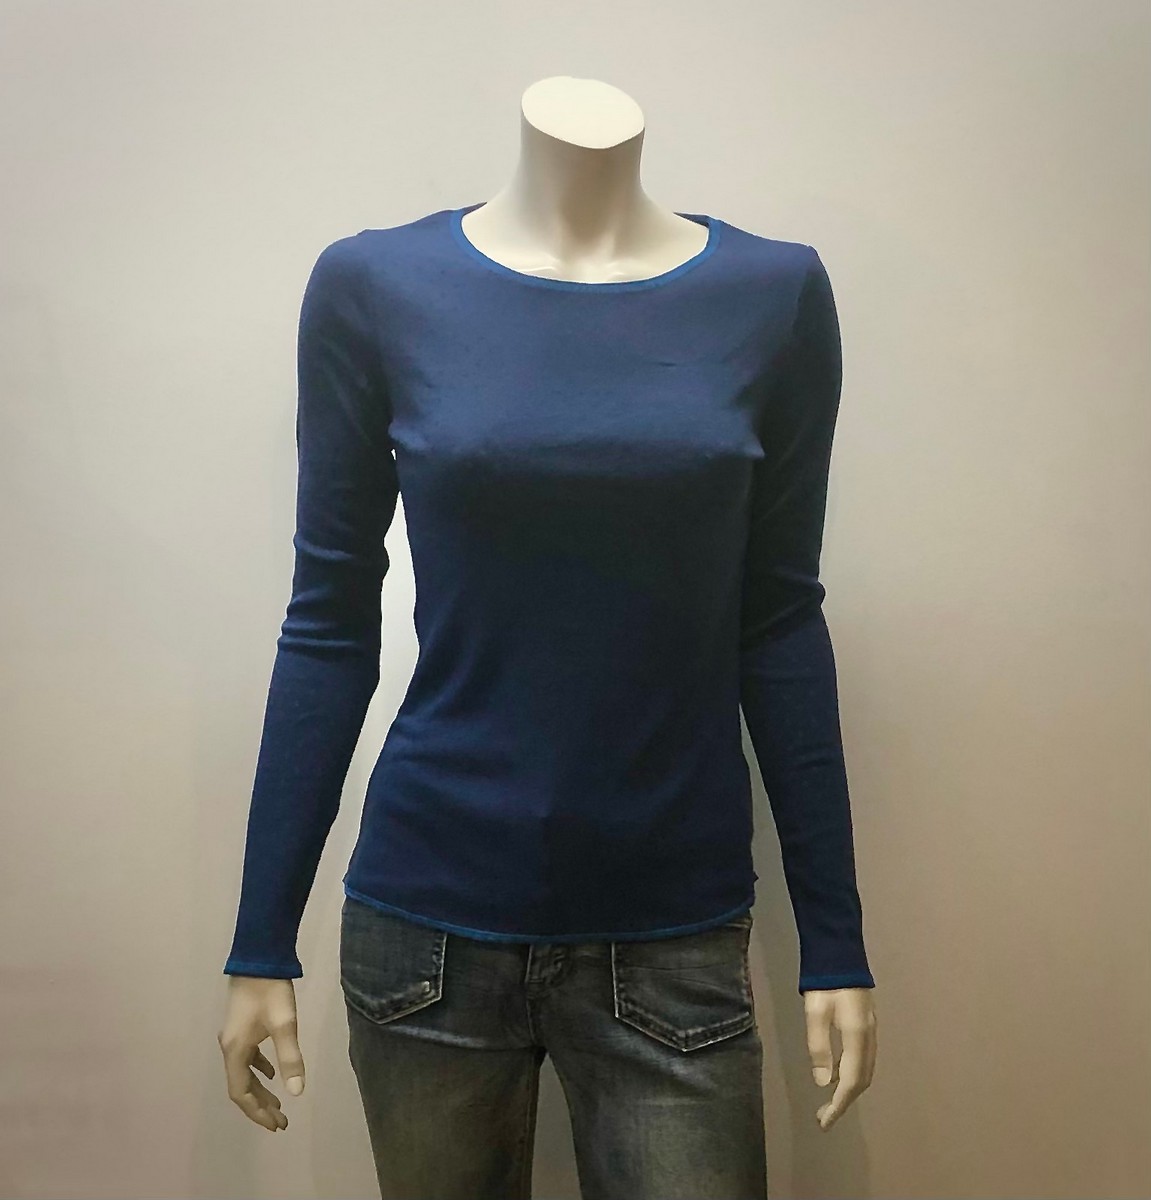 Shirt aus 100% Öko-Baumwolle in rot, jeansblau, limegrün und türkis von Jalfe